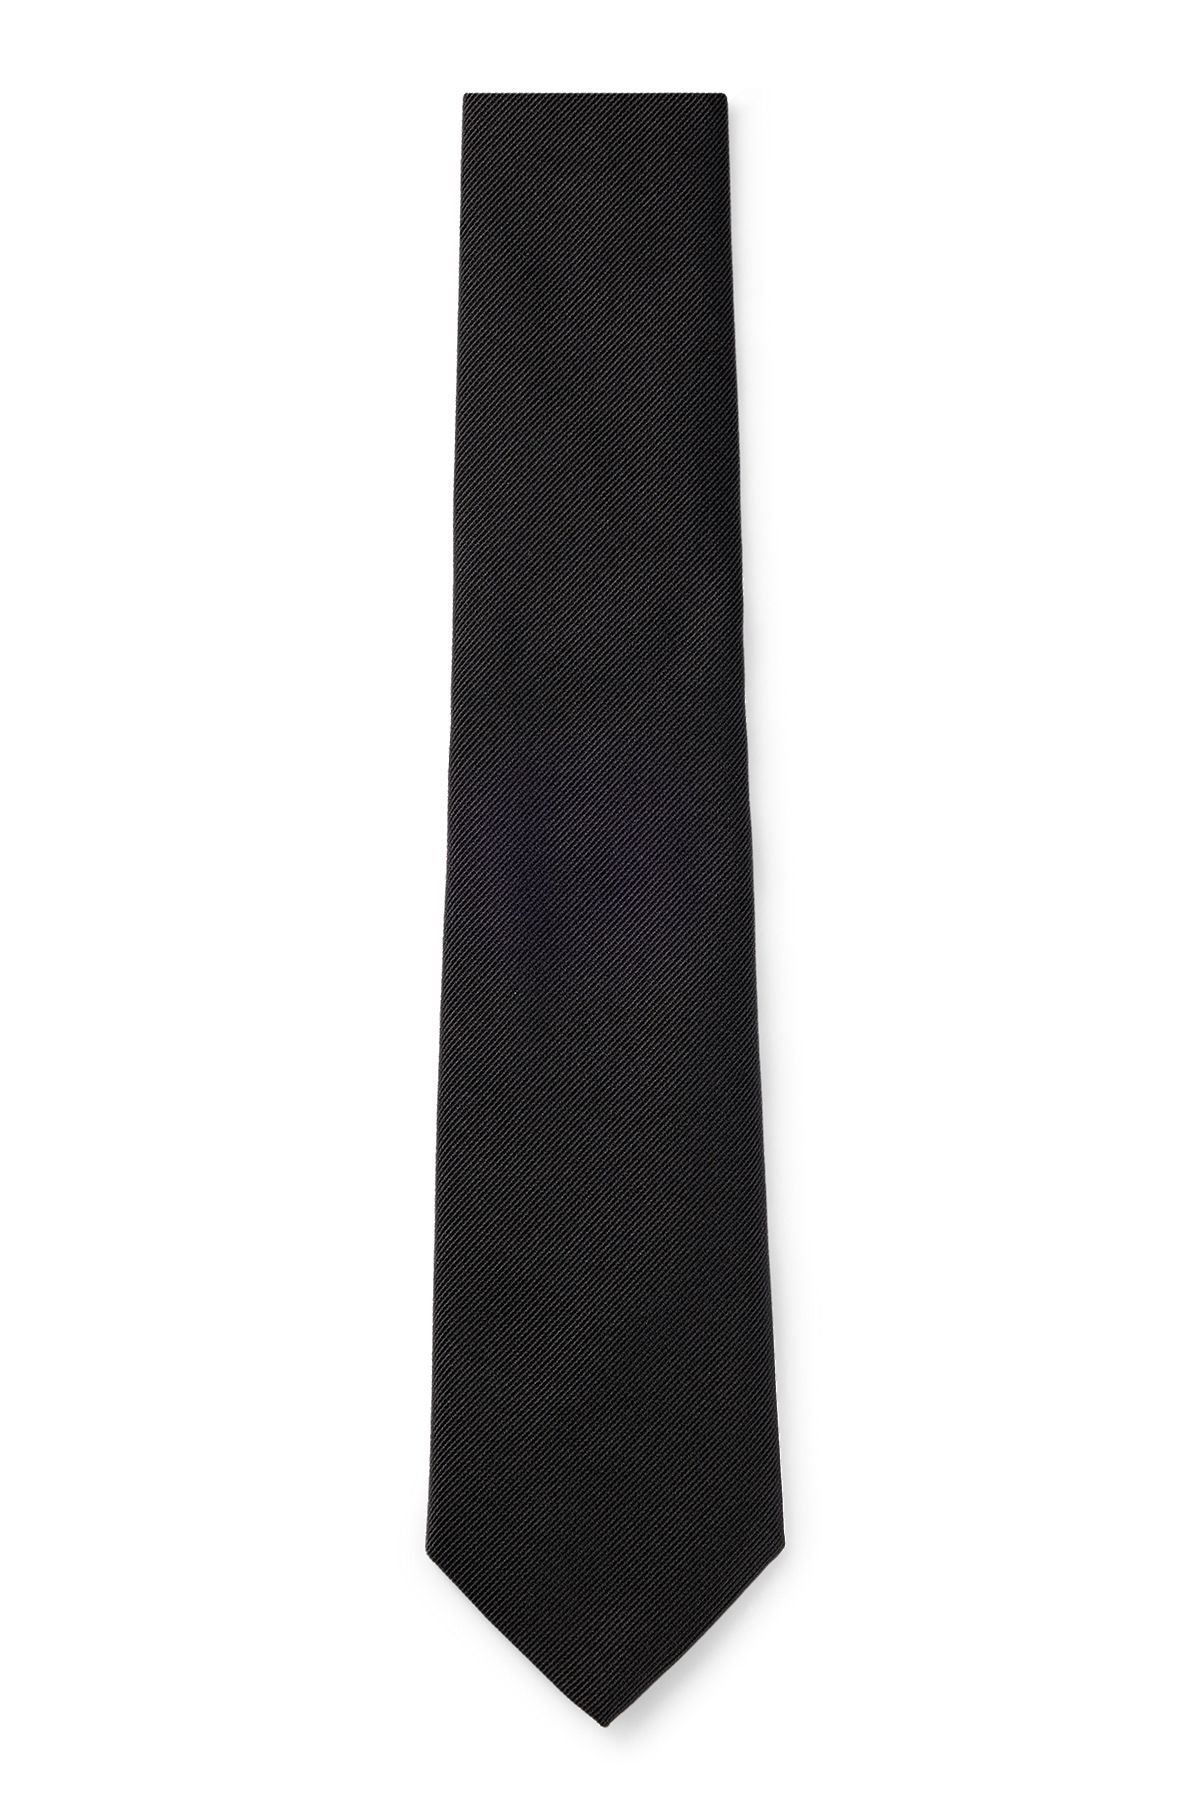 Cravate habillée en jacquard de soie, Noir